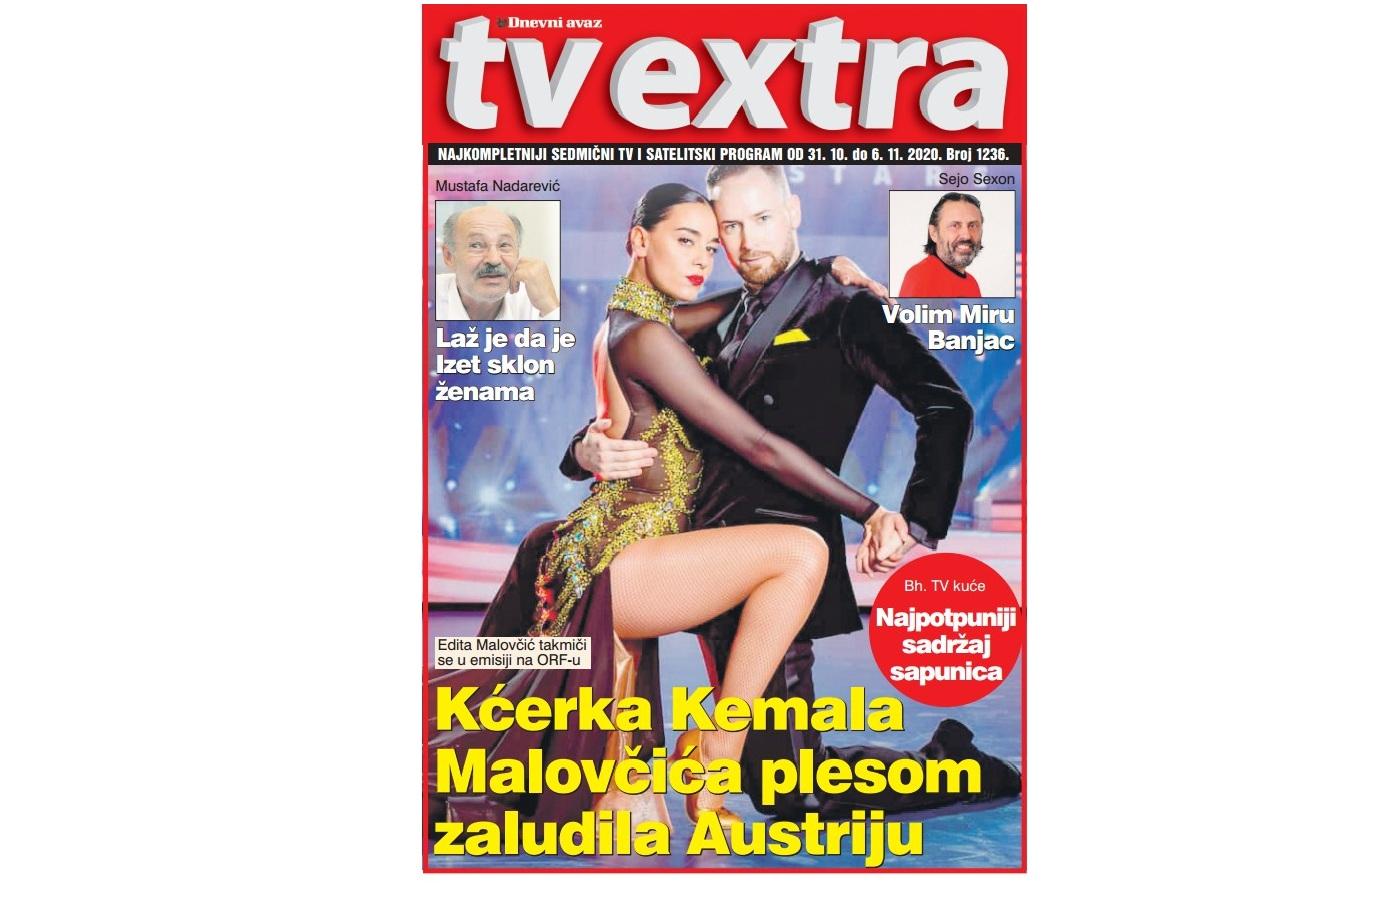 "TV Extra" u petak: Kćerka Kemala Malovčića plesom zaludila Austriju, od četvrtka na Novoj BH nove epizode LZN-a, najpotpuniji sadržaj sapunica